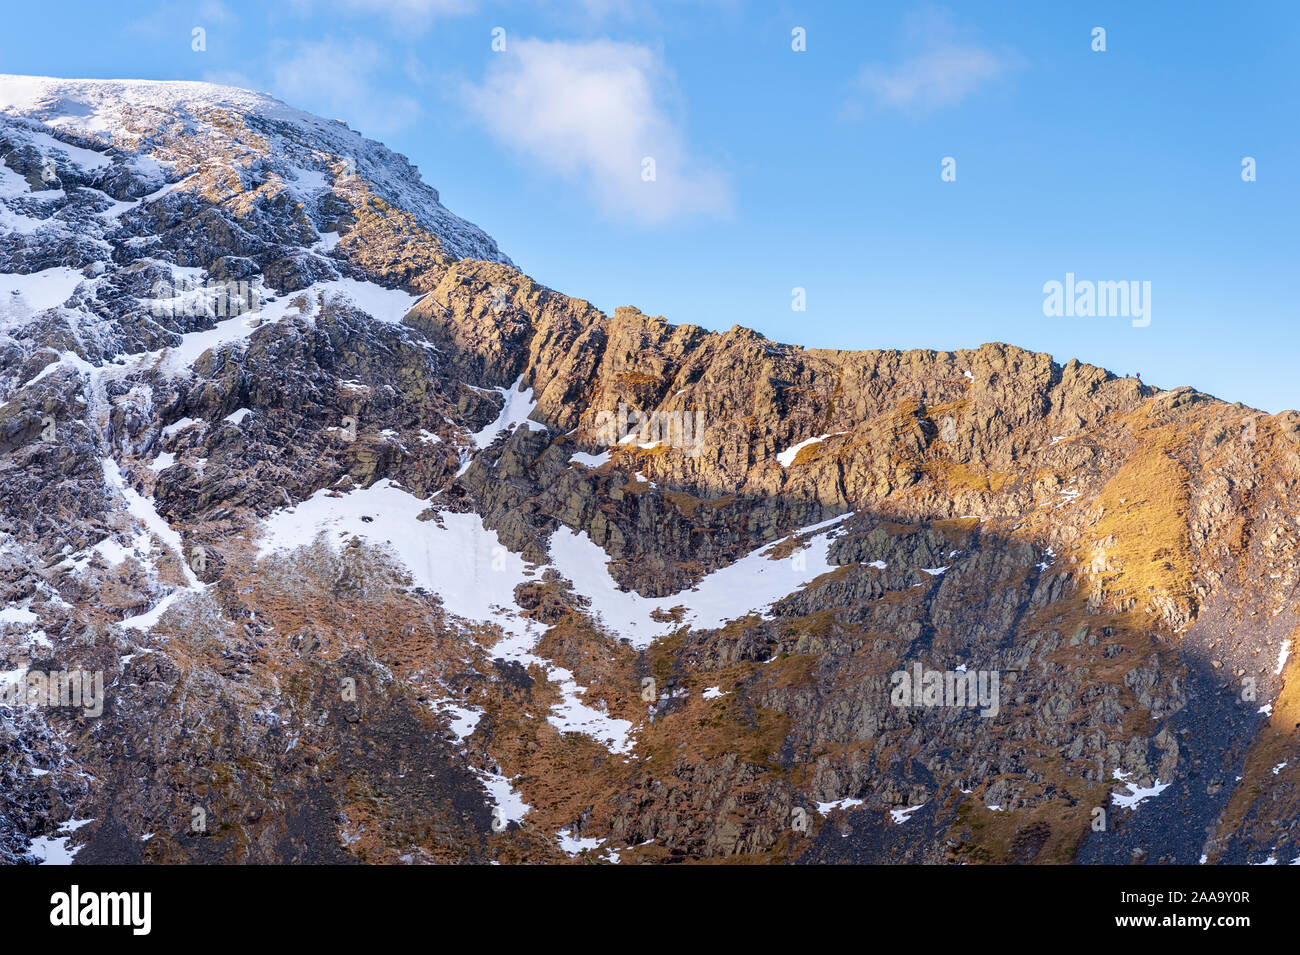 Lake District inglés paisaje montañoso borde afilado en el hielo y la nieve del invierno por escamas cayó sobre Blencathra uno del Noreste Lakeland fells Foto de stock